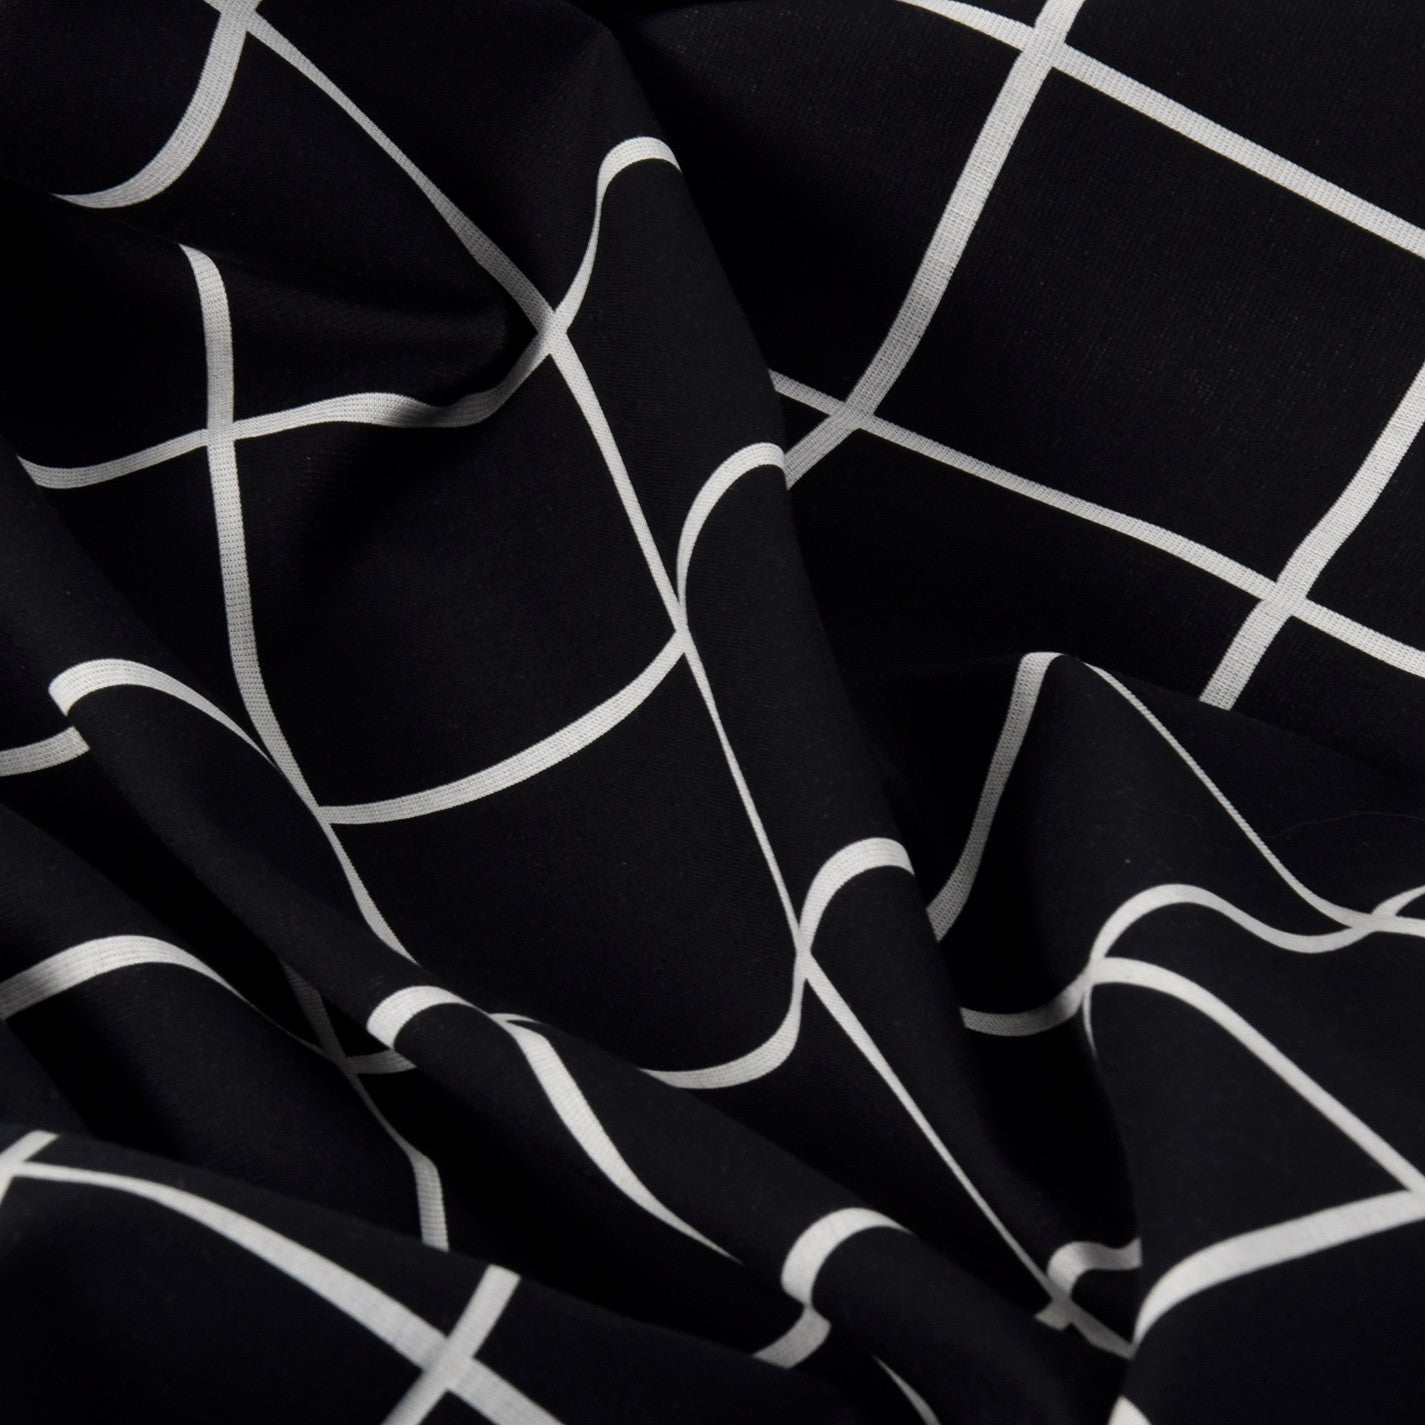 Black White Check Coating Fabric 2003 - Fabrics4Fashion